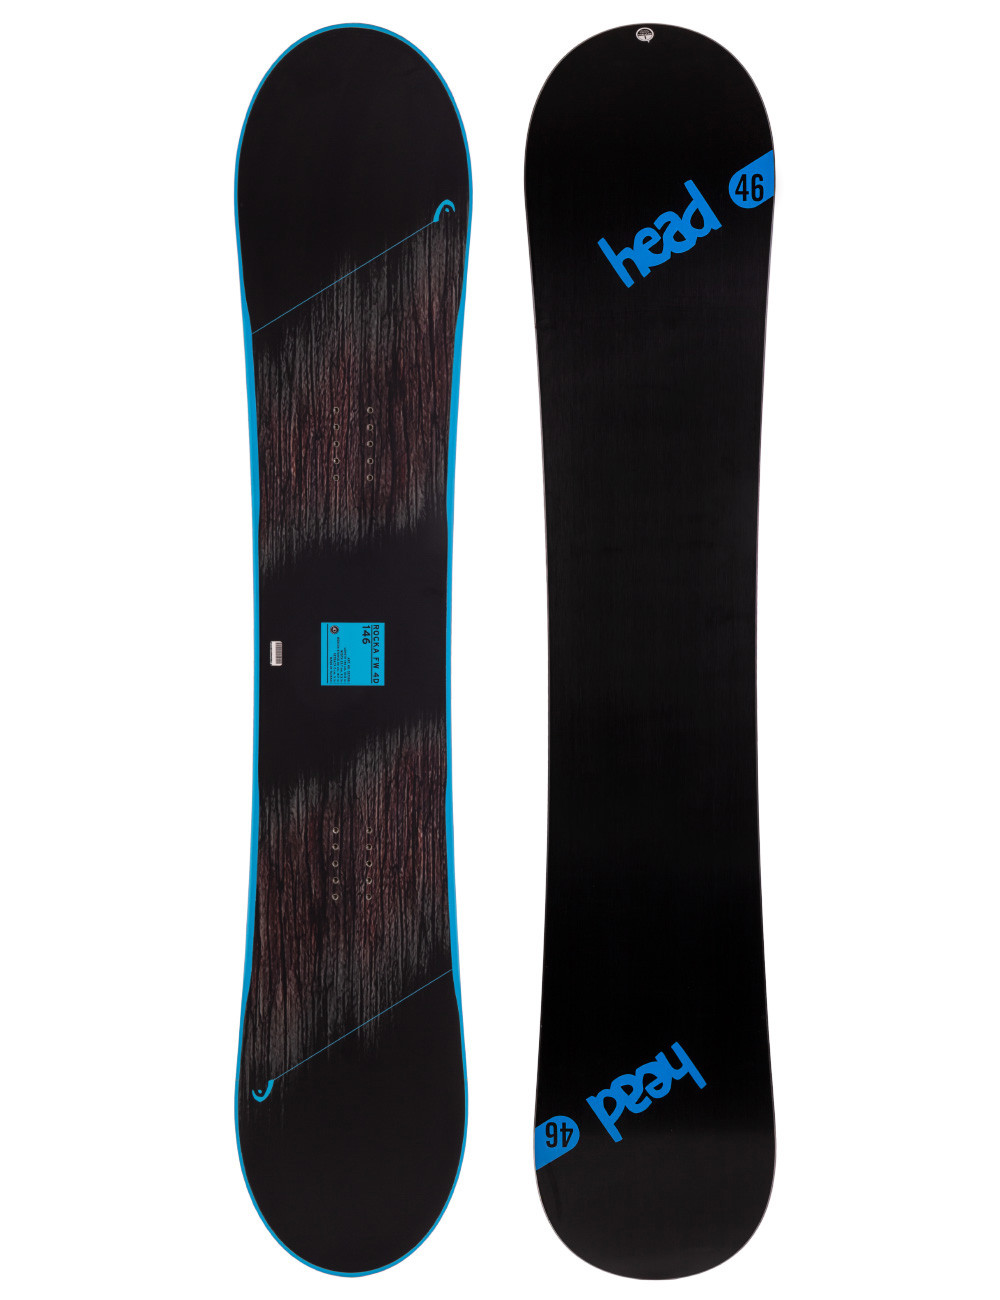 Deska snowboardowa Head Rocka FW 4D